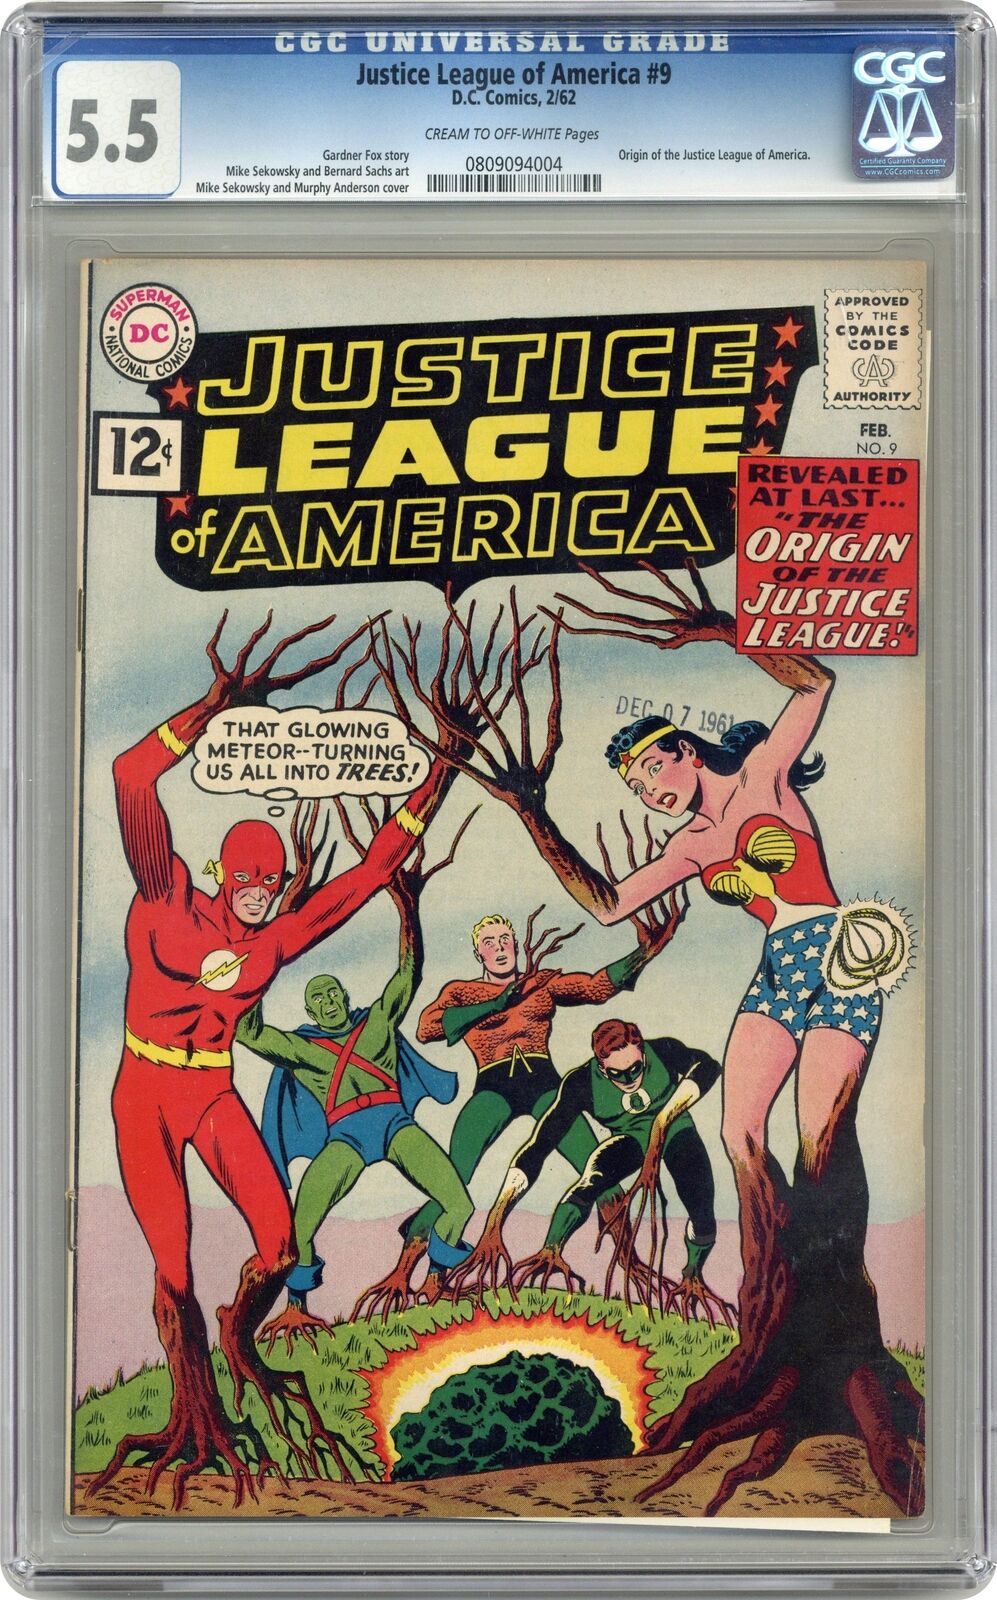 Justice League of America #9 CGC 5.5 1962 0809094004 Justice League origin